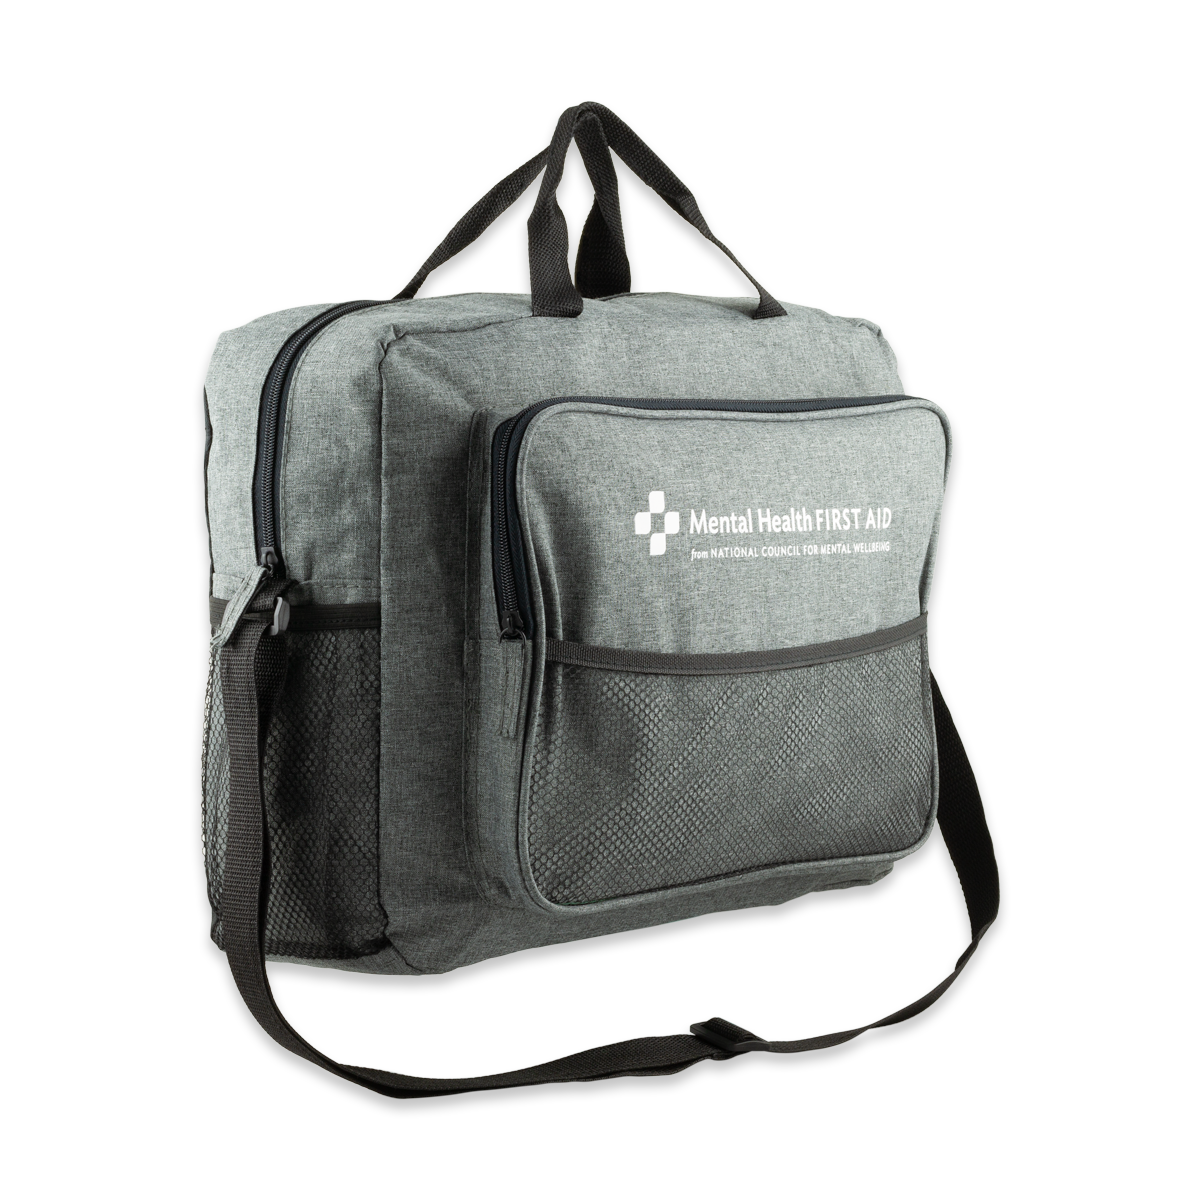 Mental Health First Aid Laptop Bag